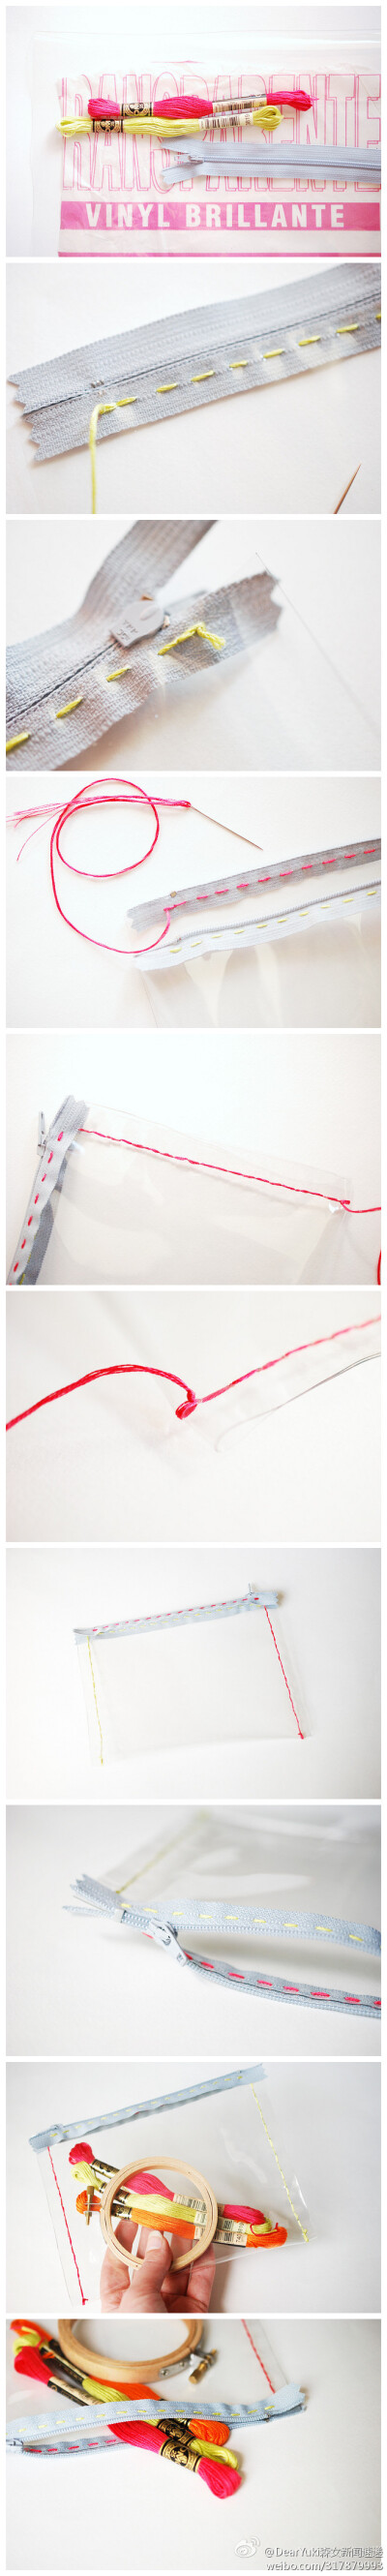 简易拉链袋 只要准备好透明材质的厚塑料、一条拉链和针线、剪刀即可。